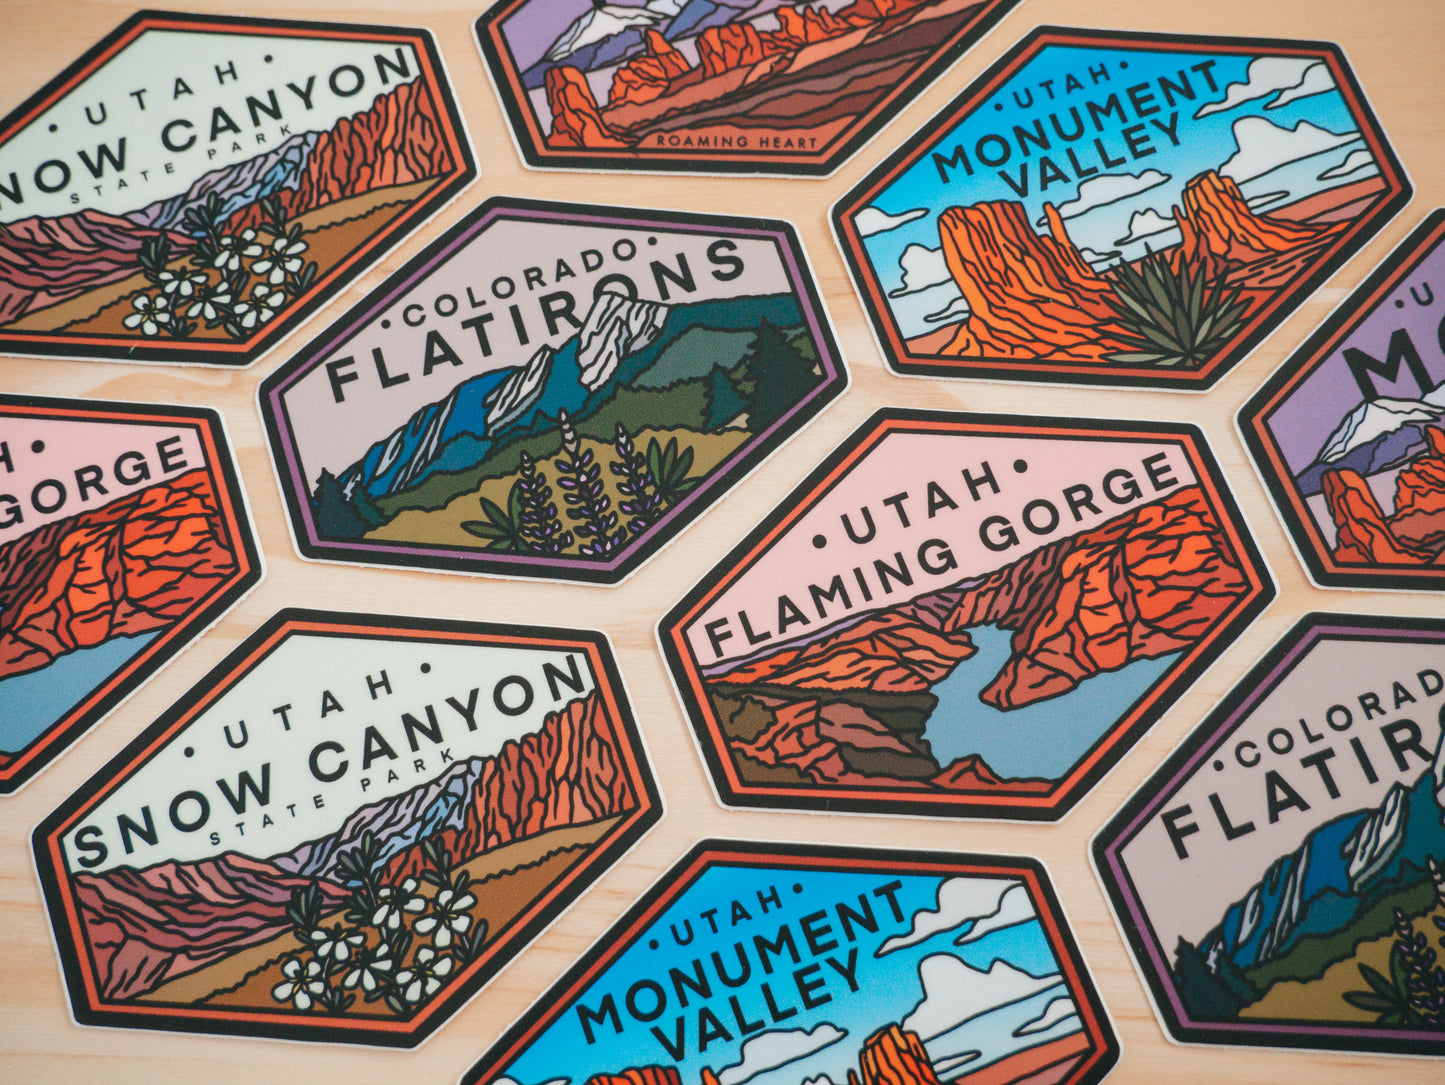 Flaming Gorge Utah | Sticker